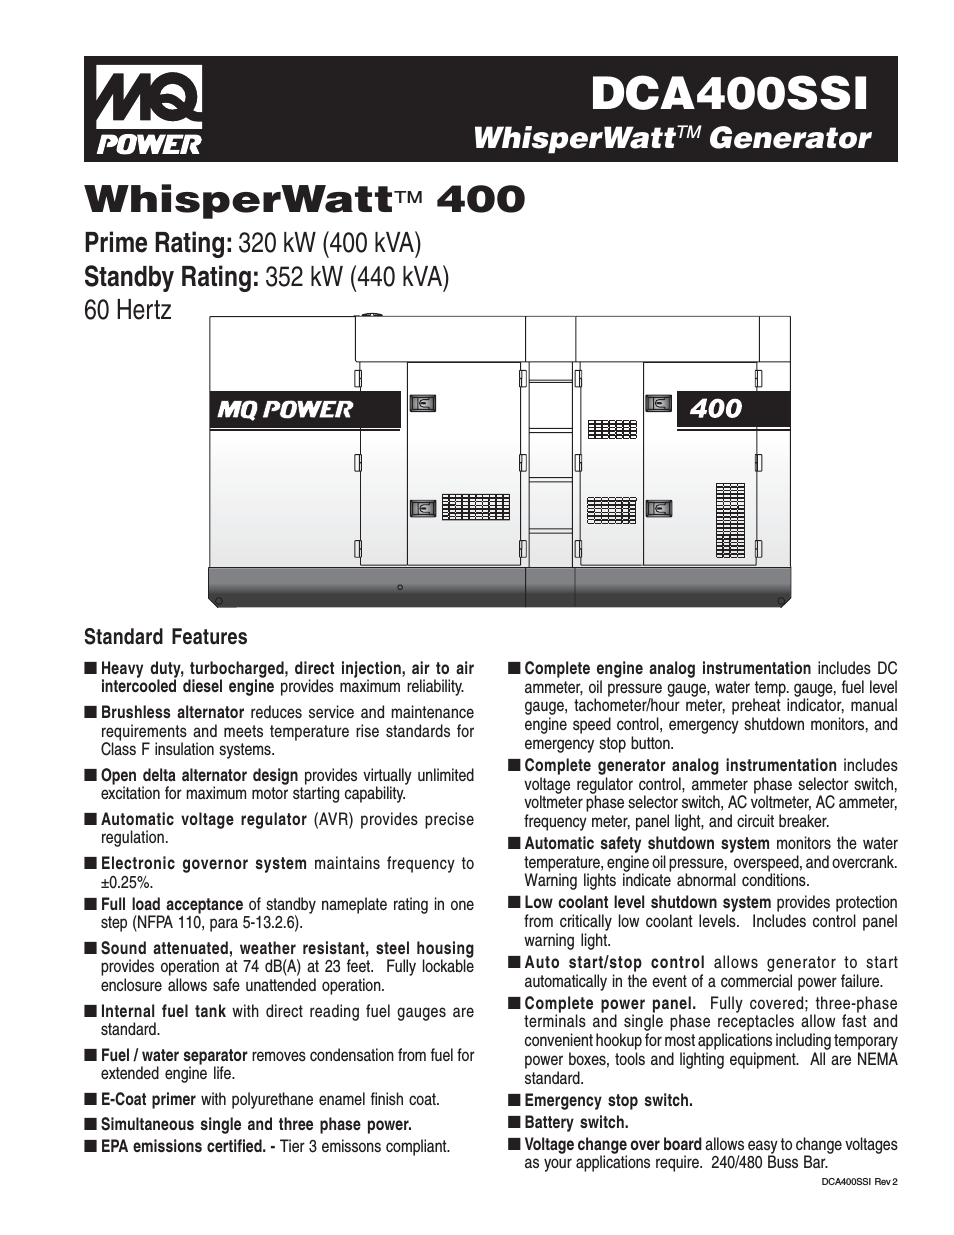 WhisperWatt(TM) 400 DCA400SSI